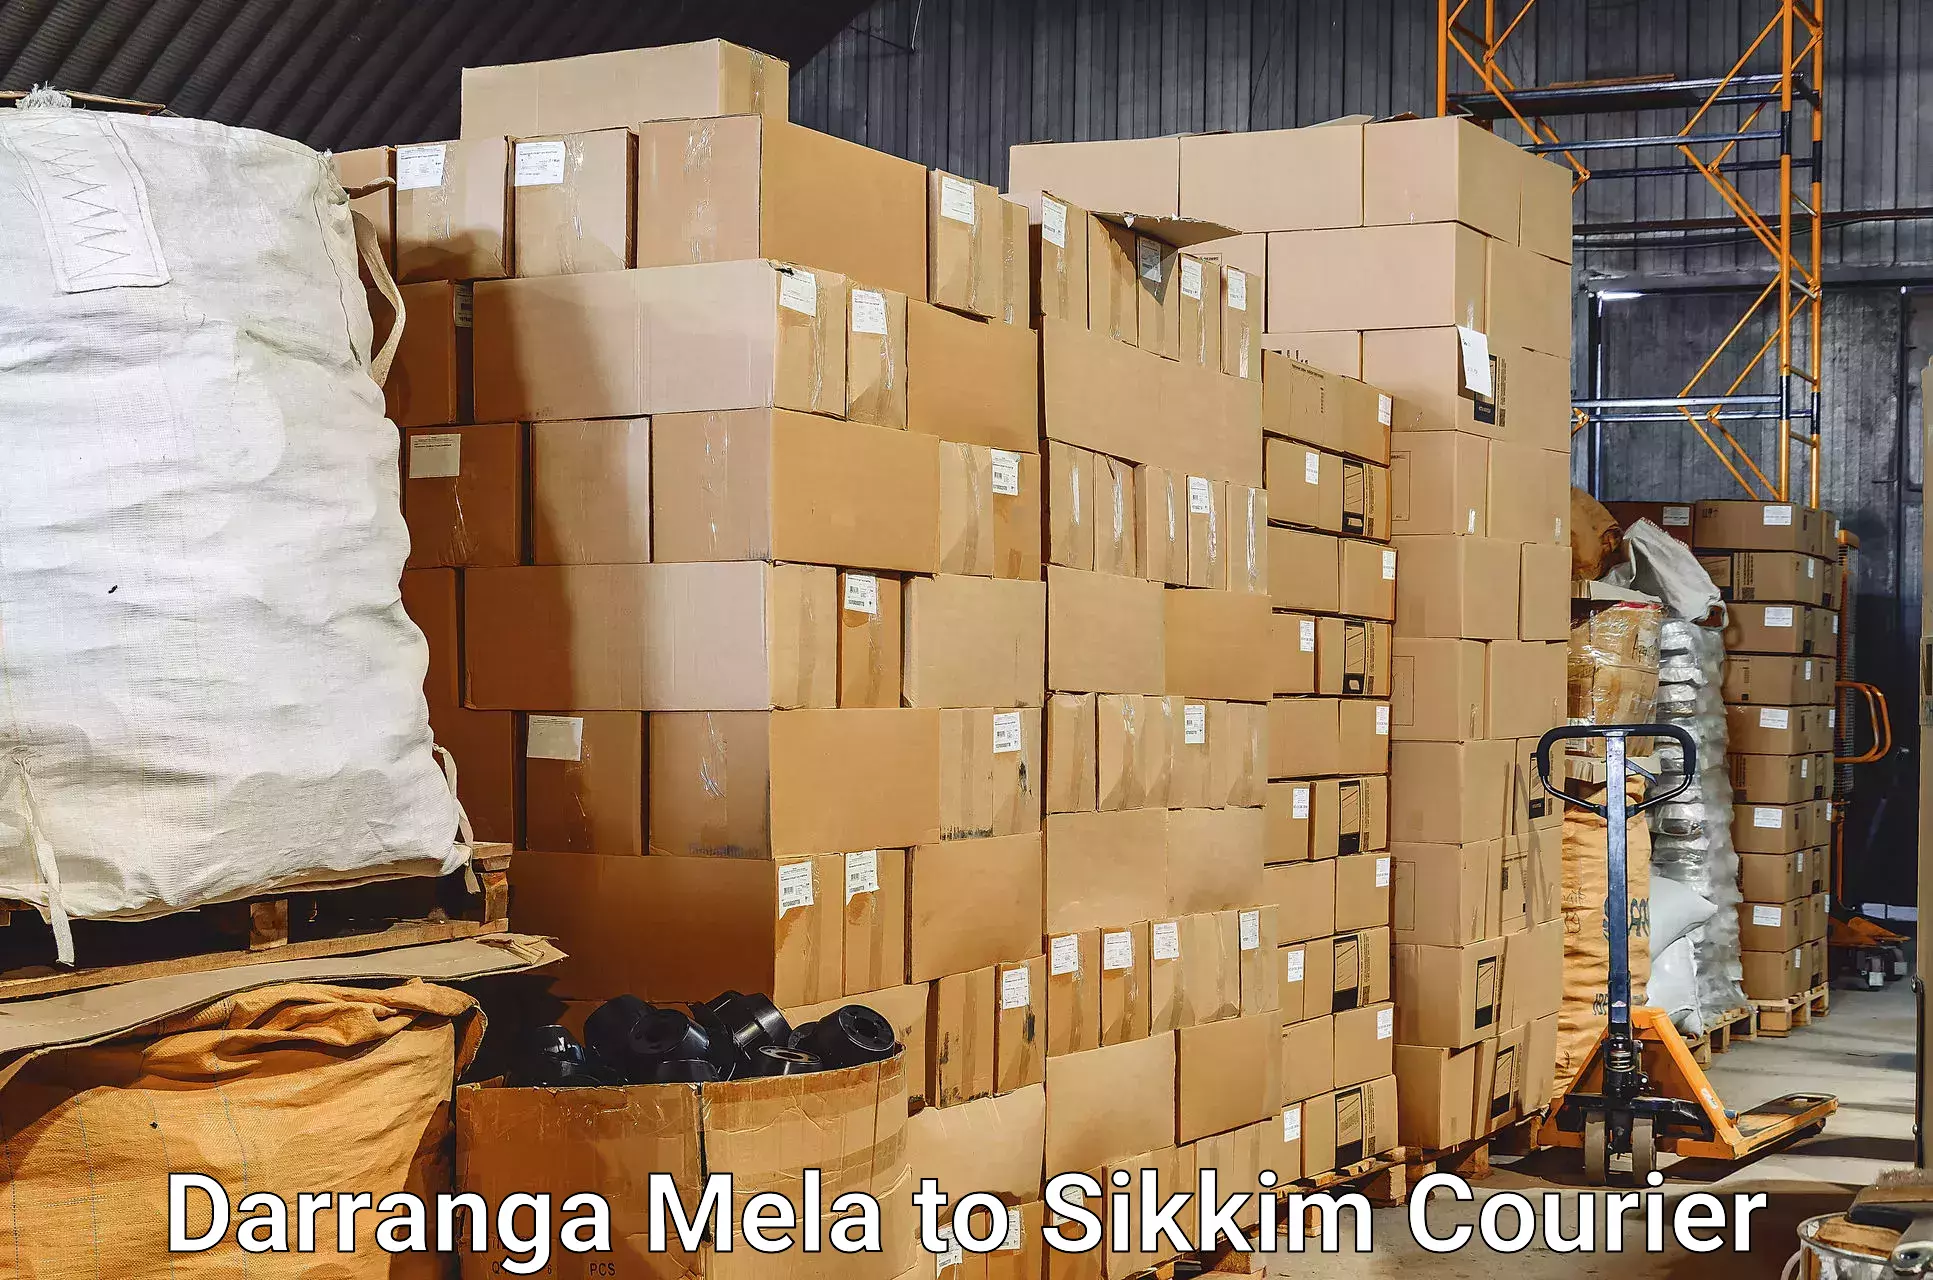 Rural baggage transport Darranga Mela to South Sikkim